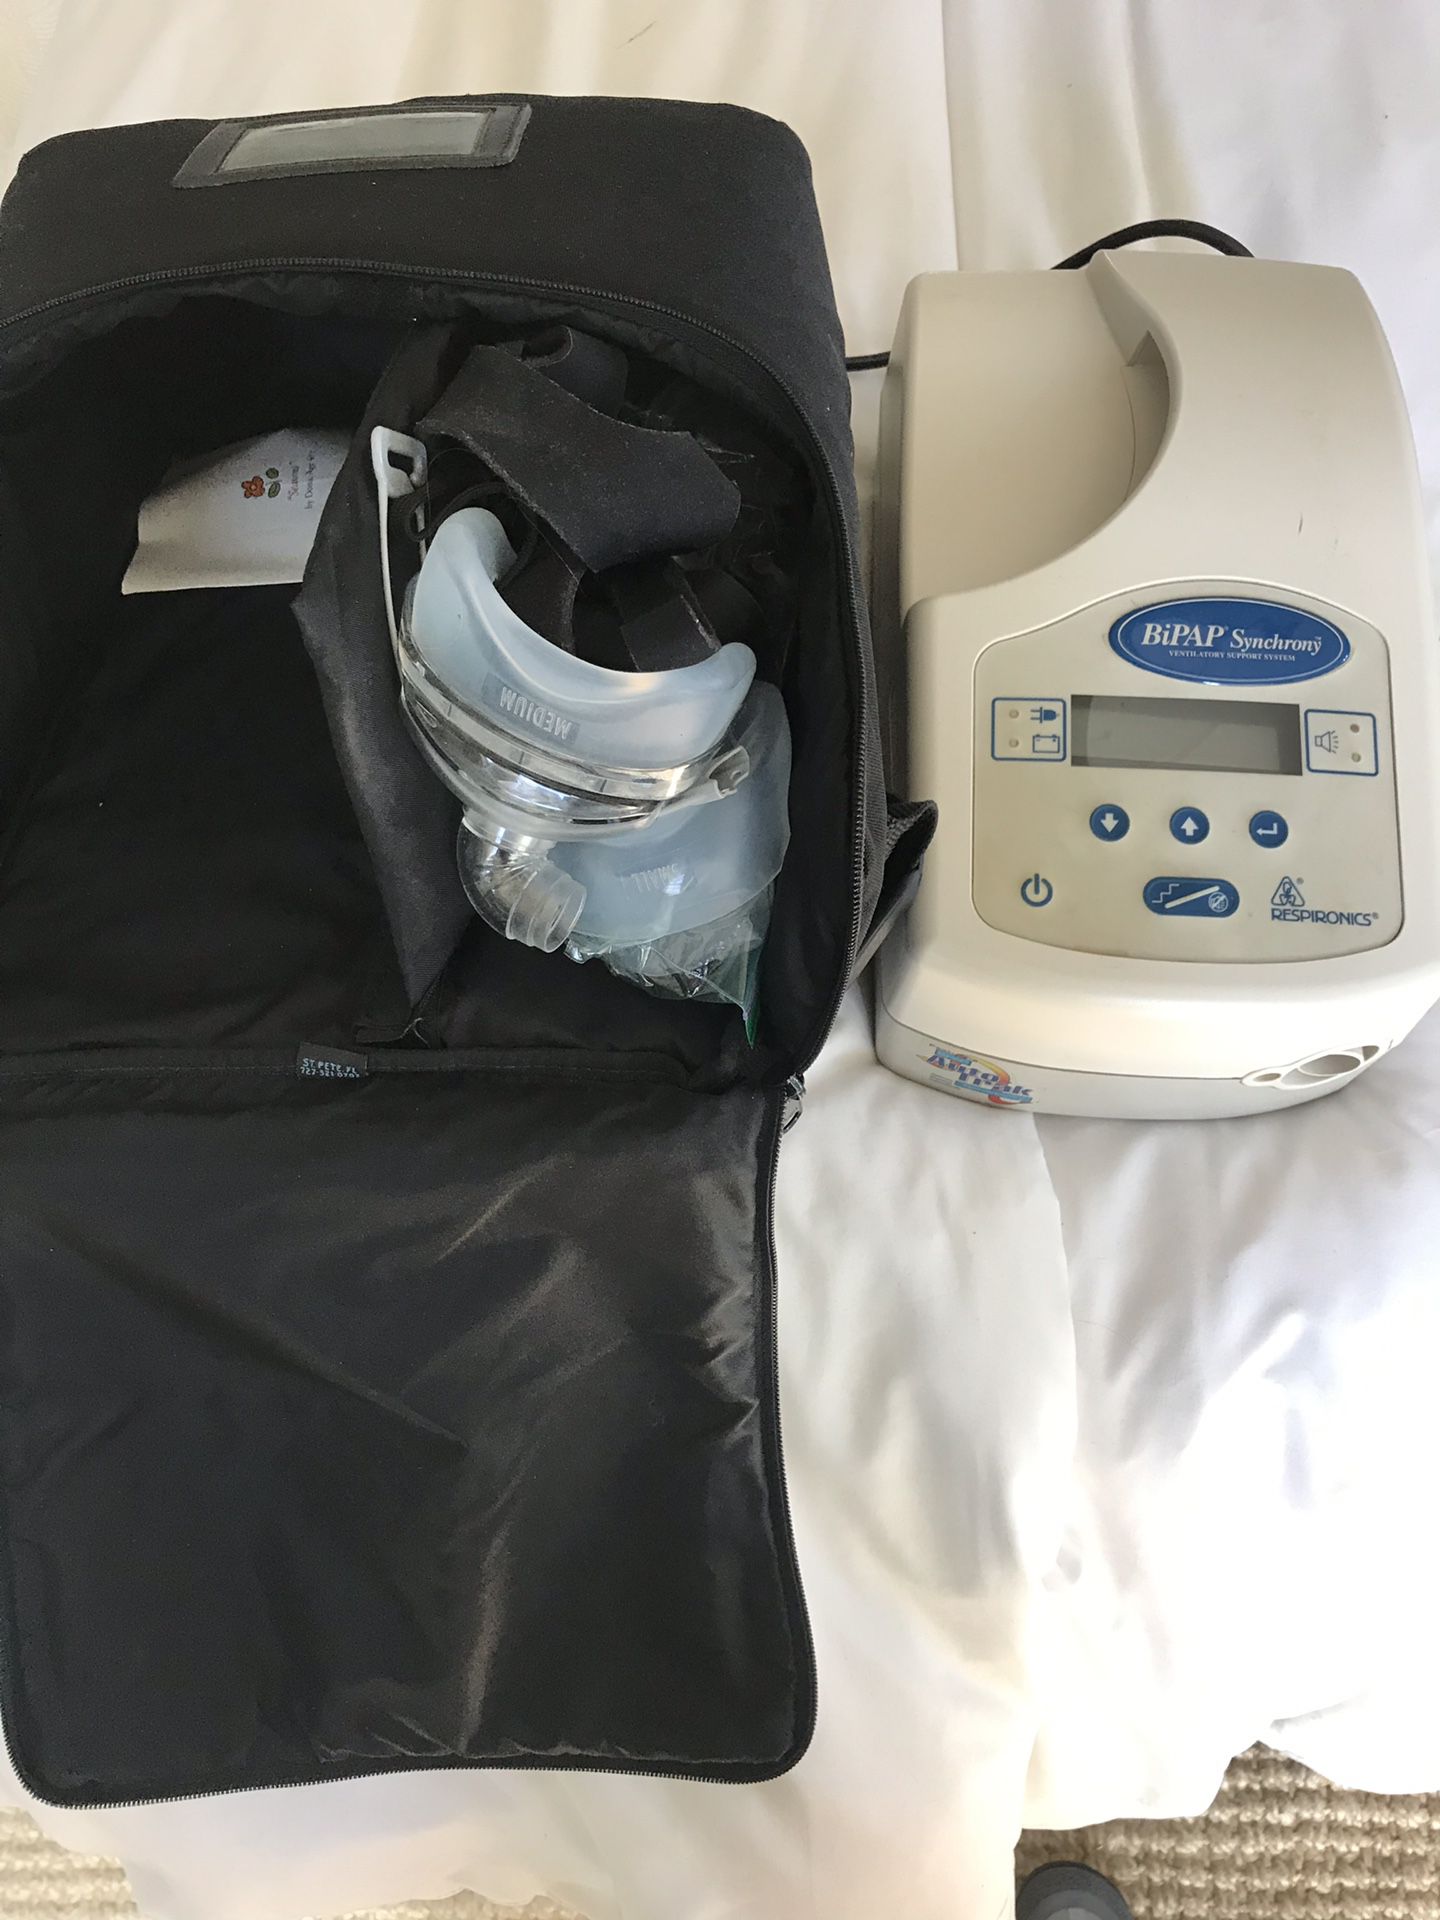 CPAP machine